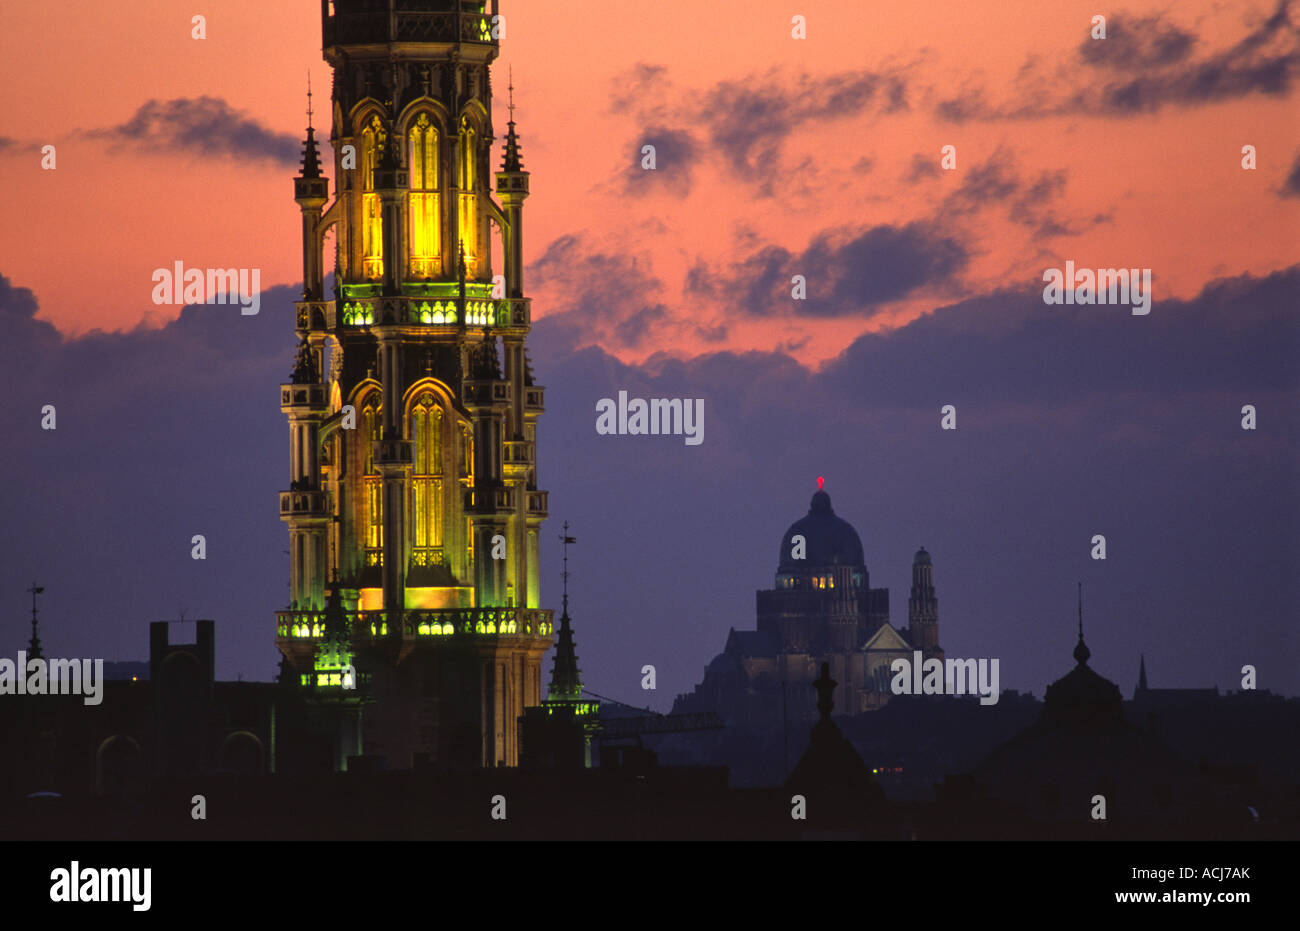 Le hall de l'Hôtel de Ville de Bruxelles la tour domine les toits de la ville au crépuscule. Bruxelles, Belgique. Banque D'Images